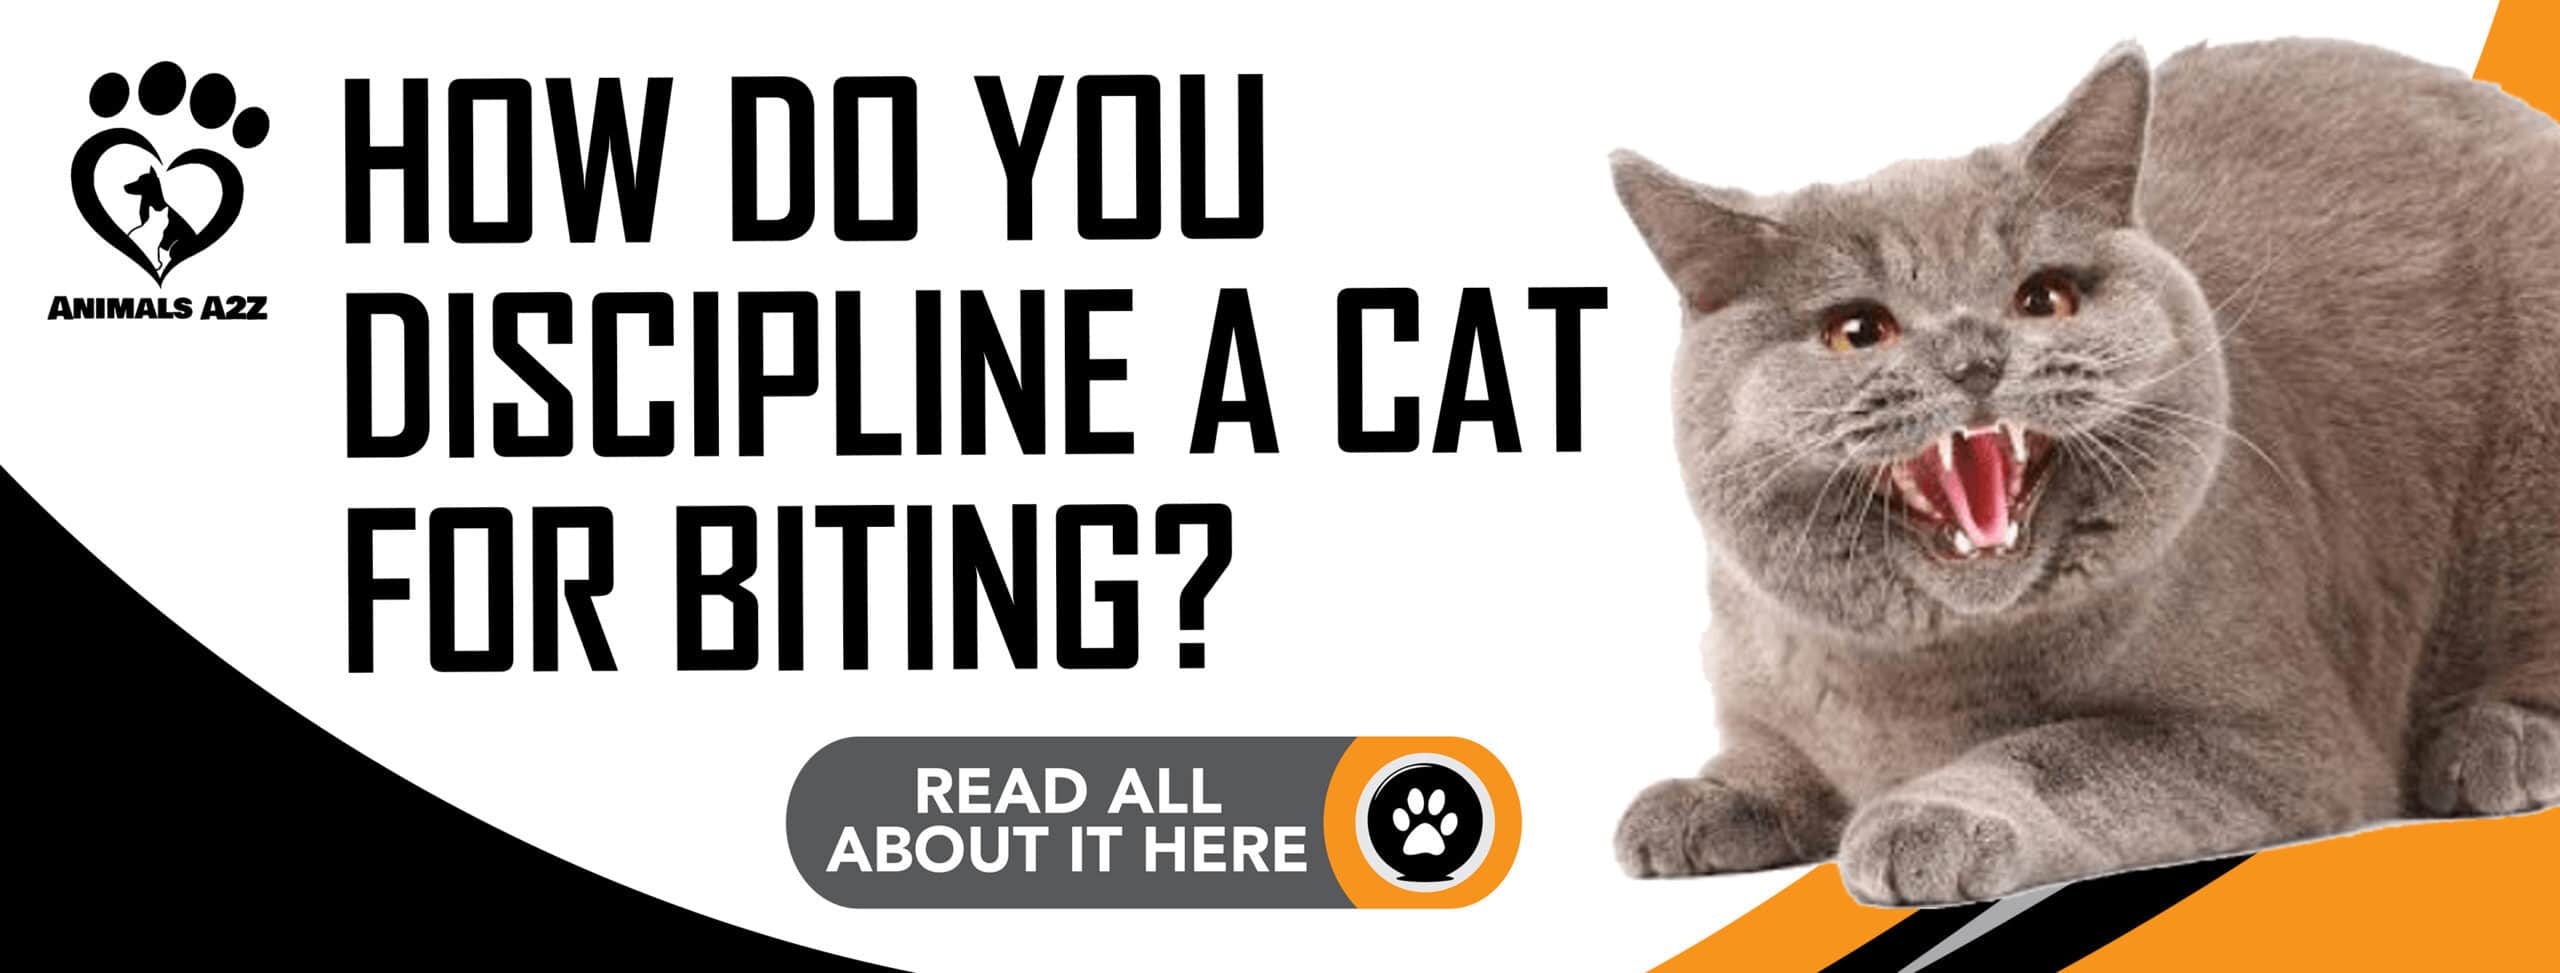 How do you discipline a cat for biting